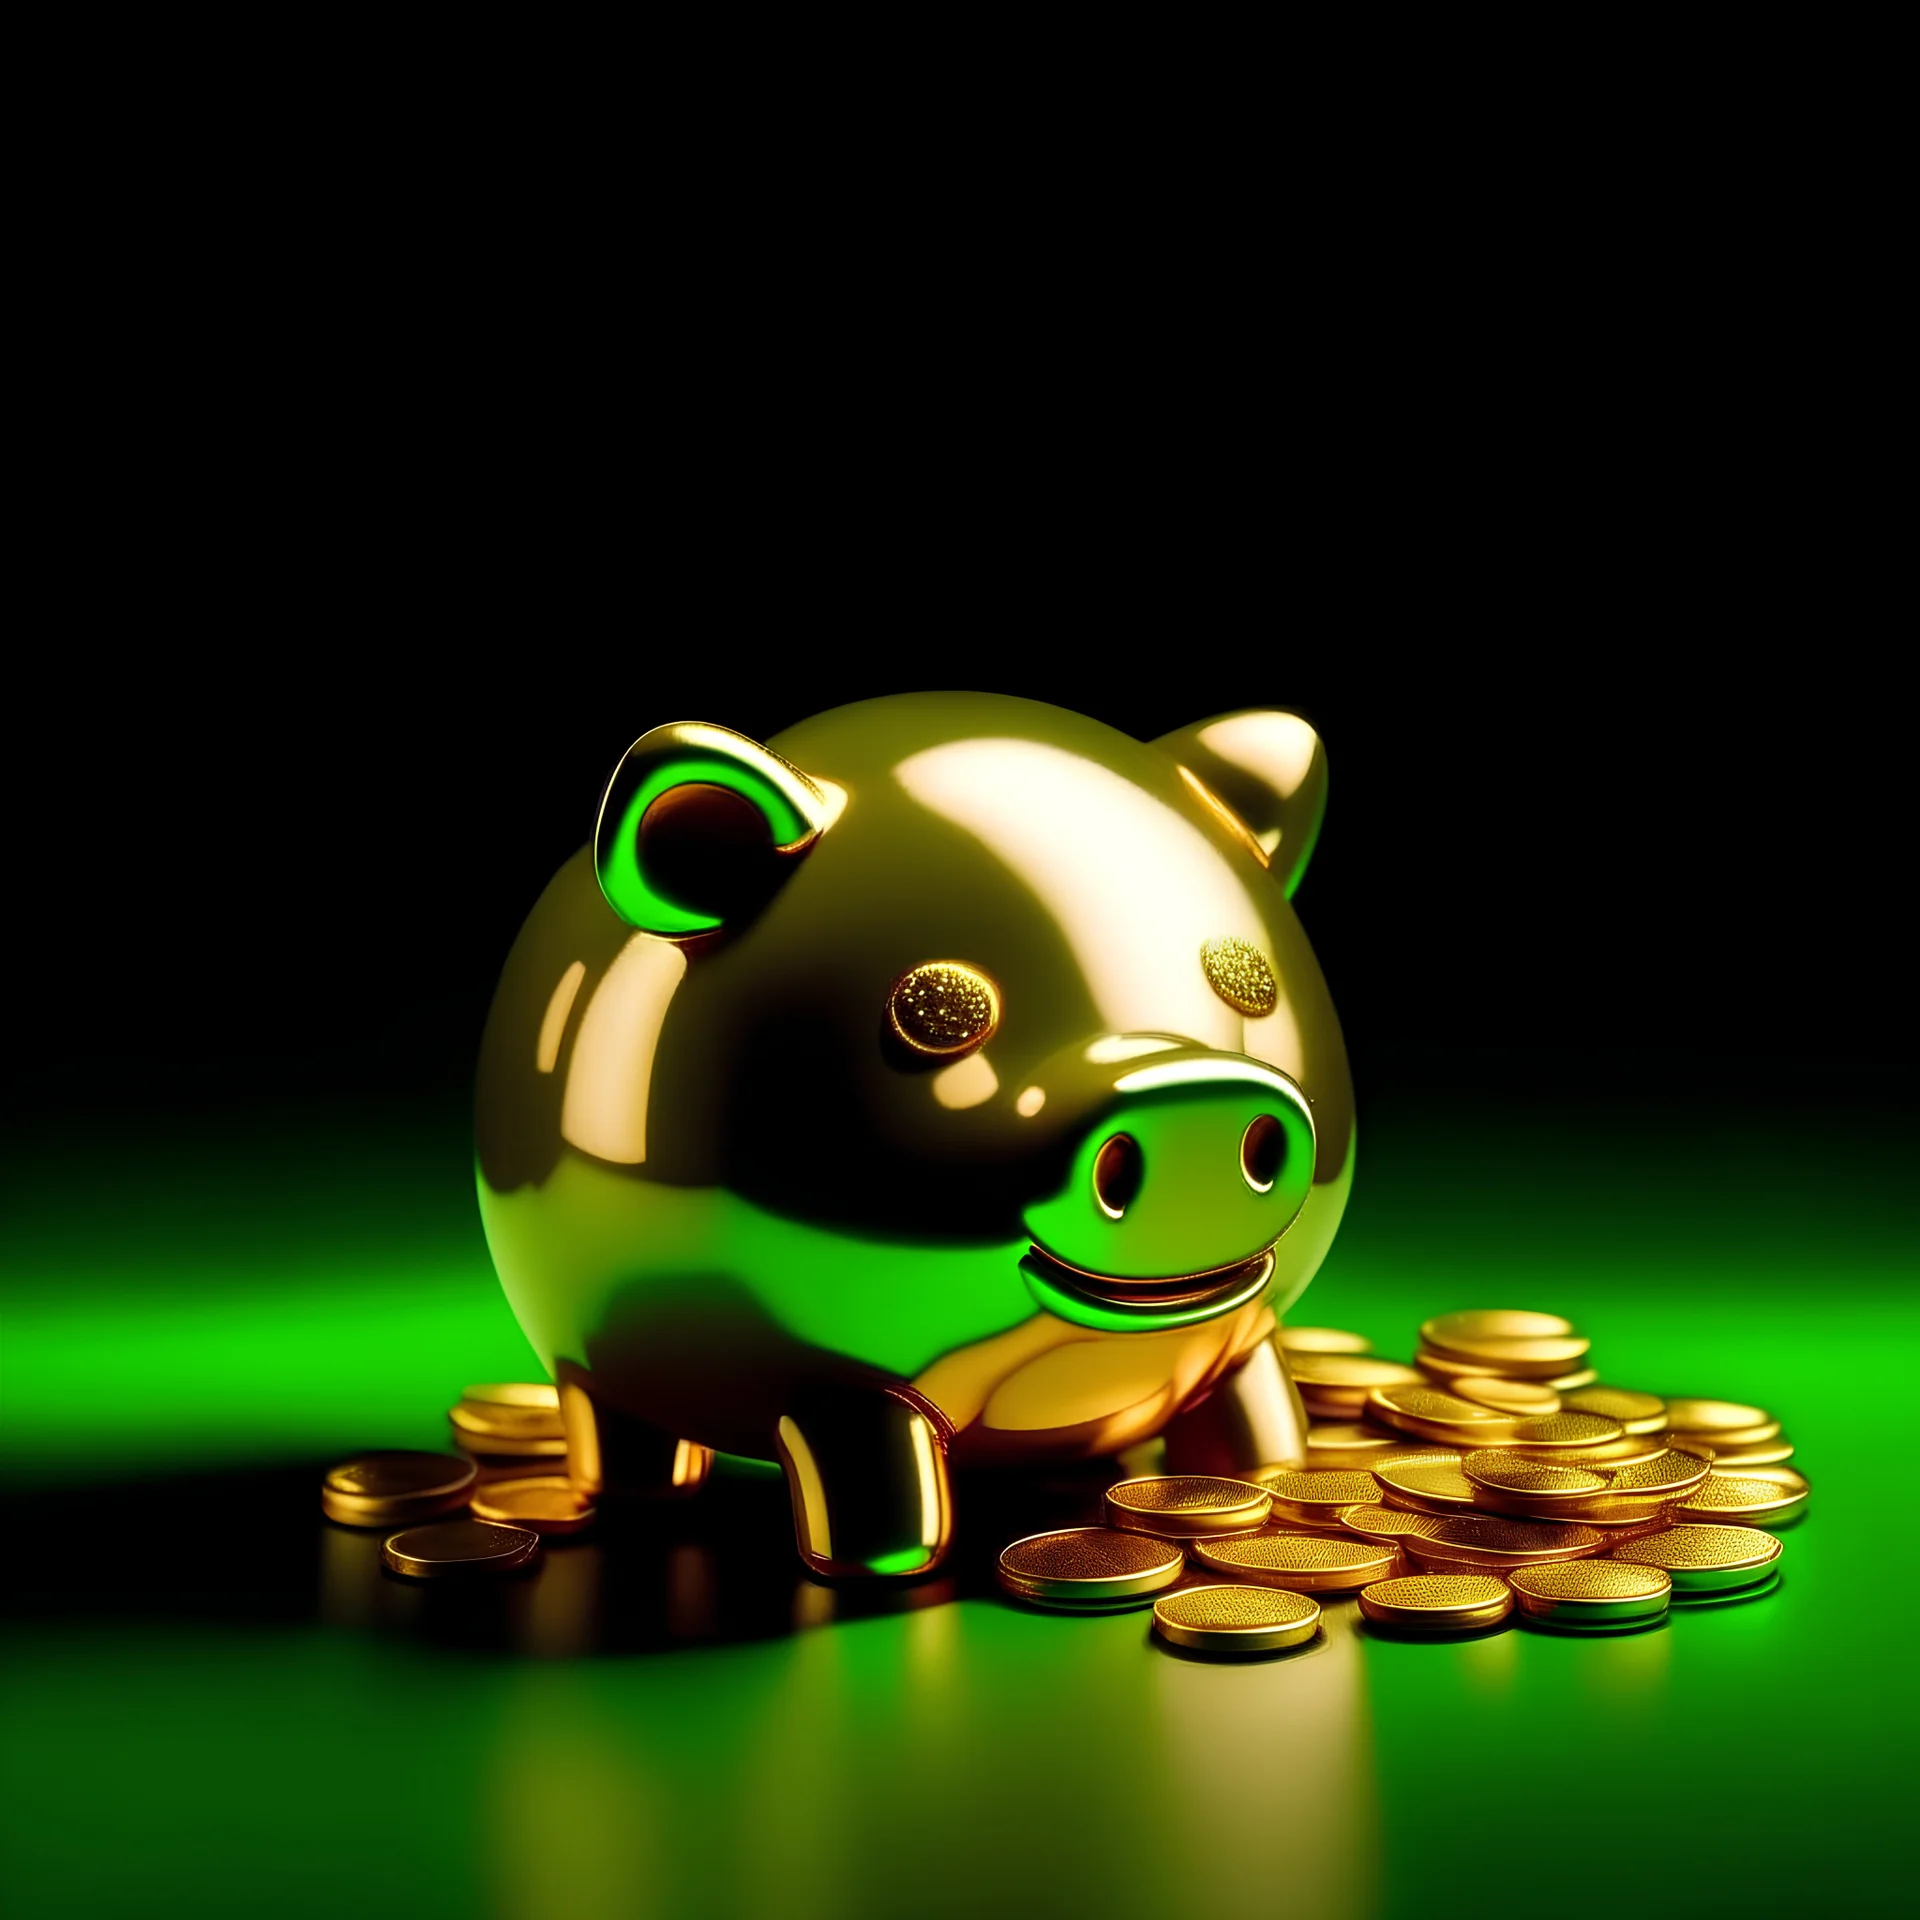 golden piggy bank, green coins